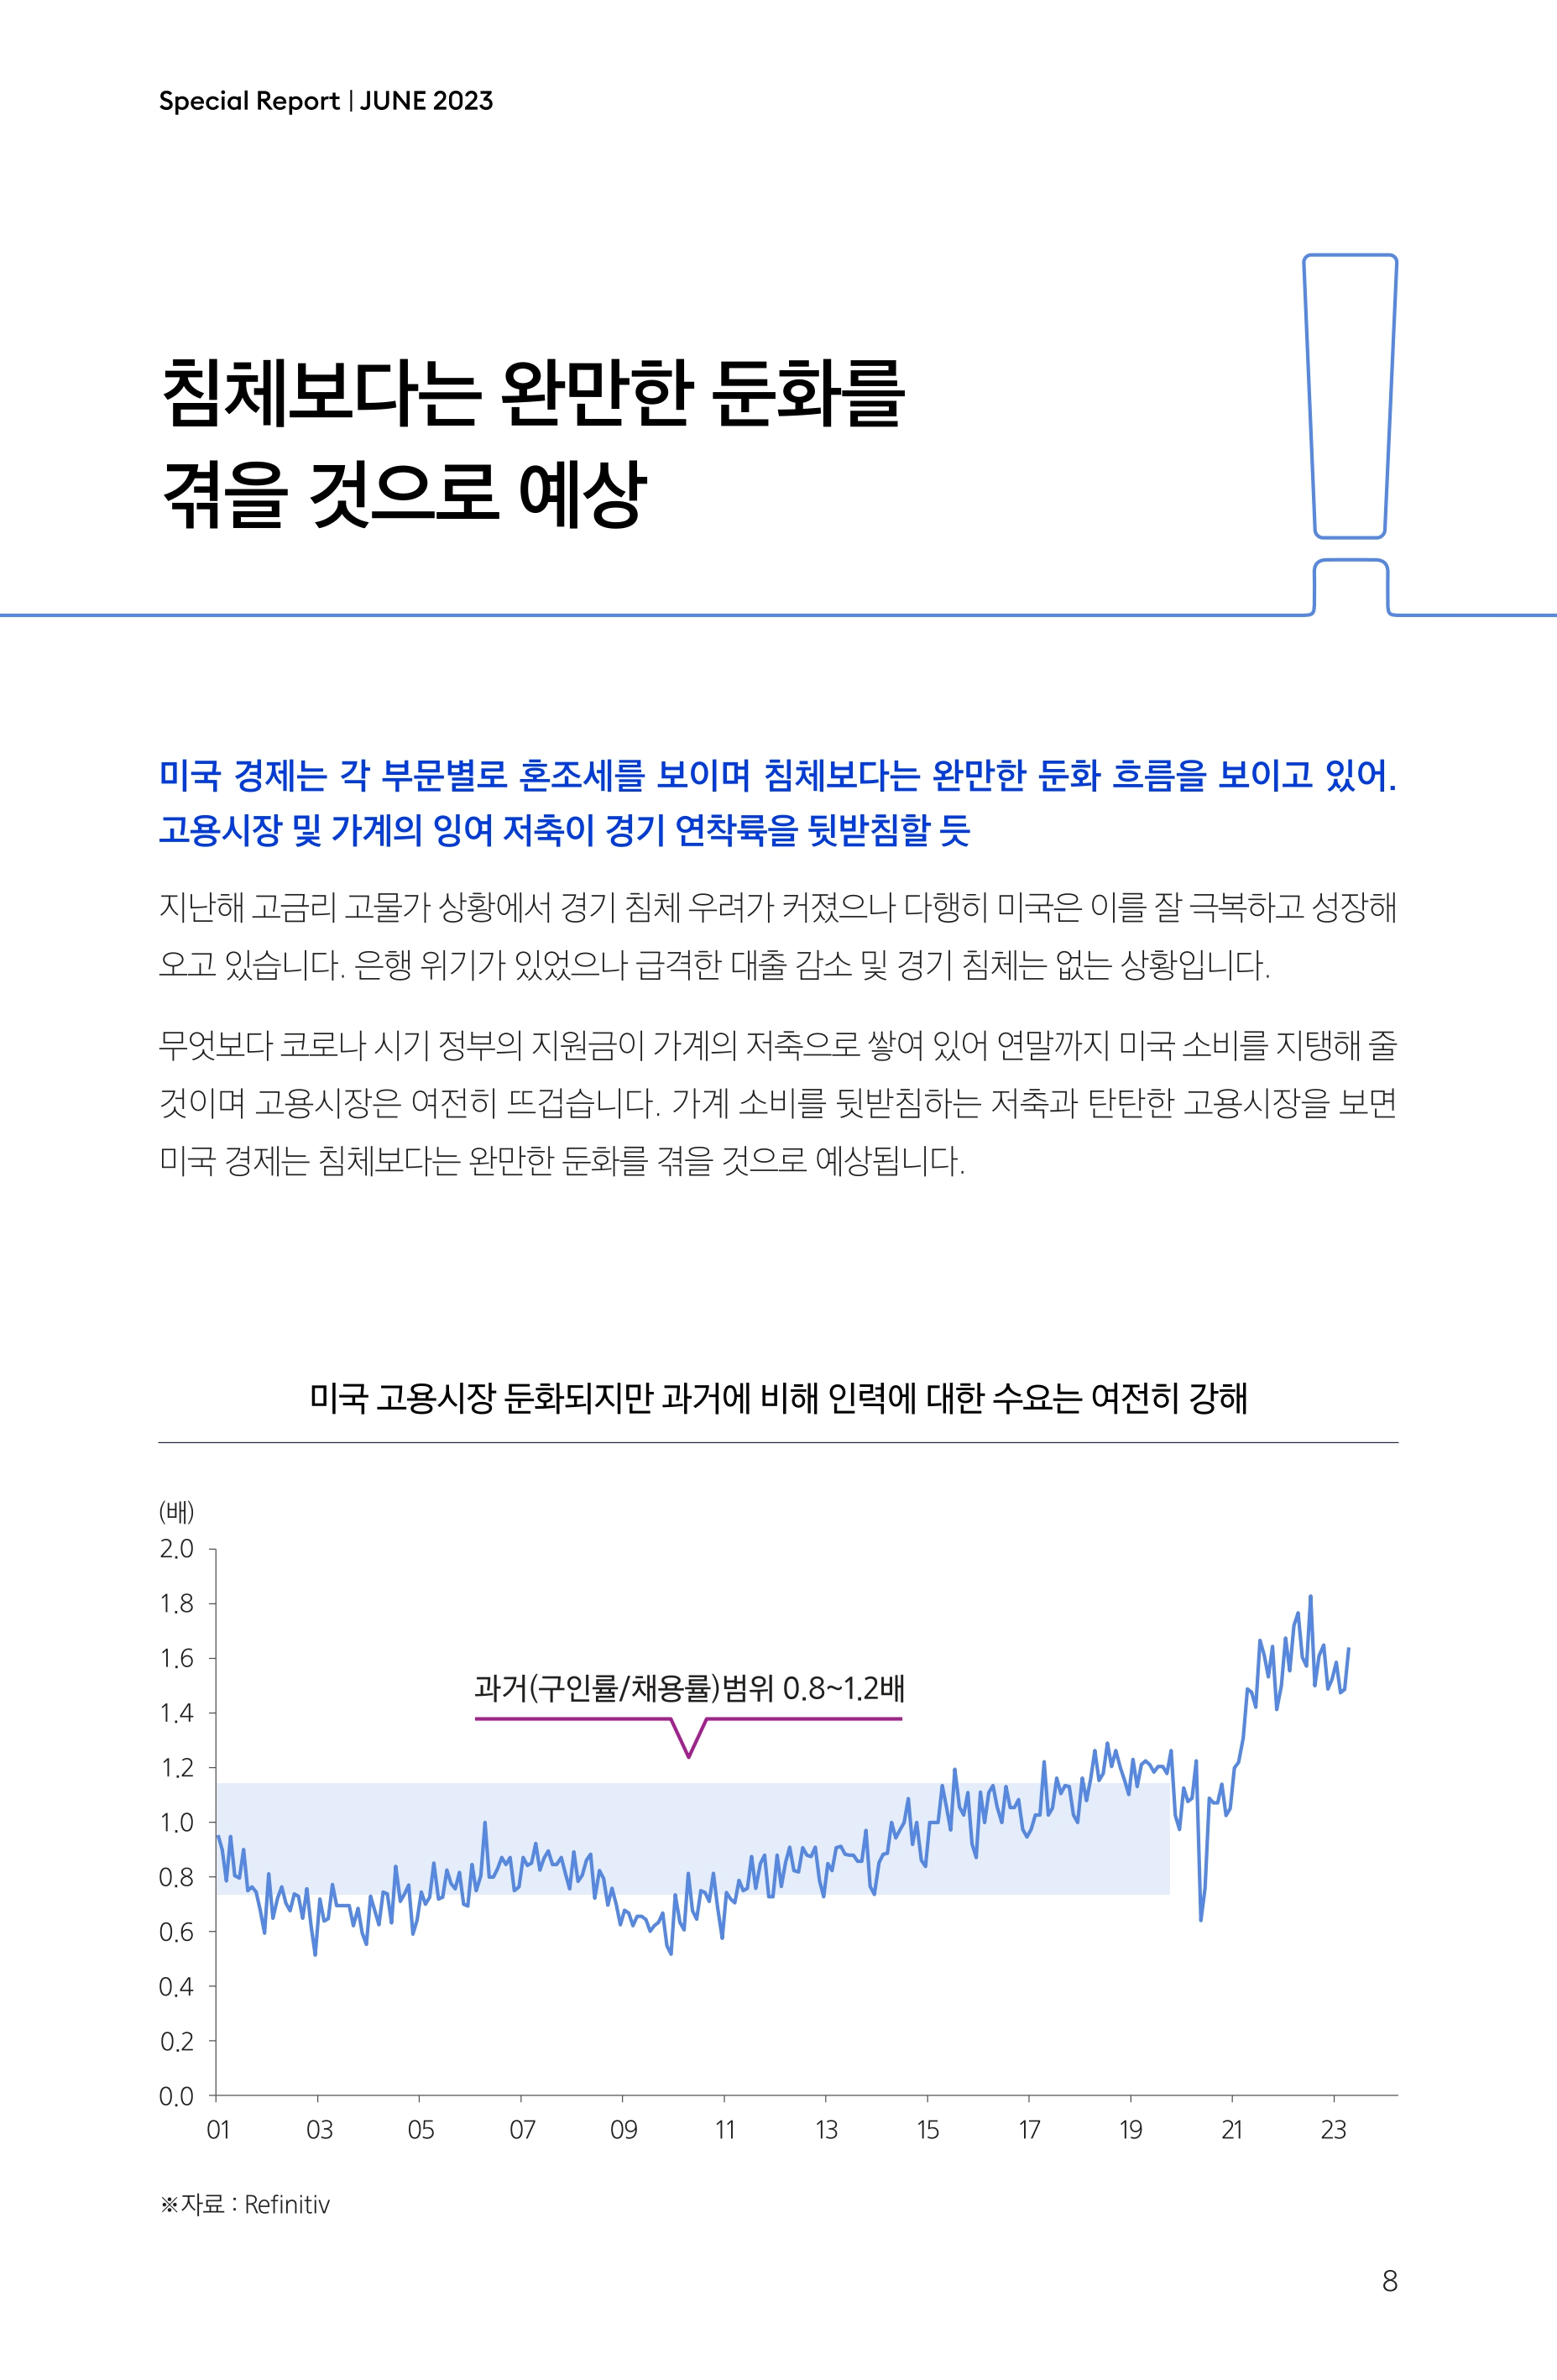 Samsung Global Market Outlook(낱장)_202306_page-0008.jpg